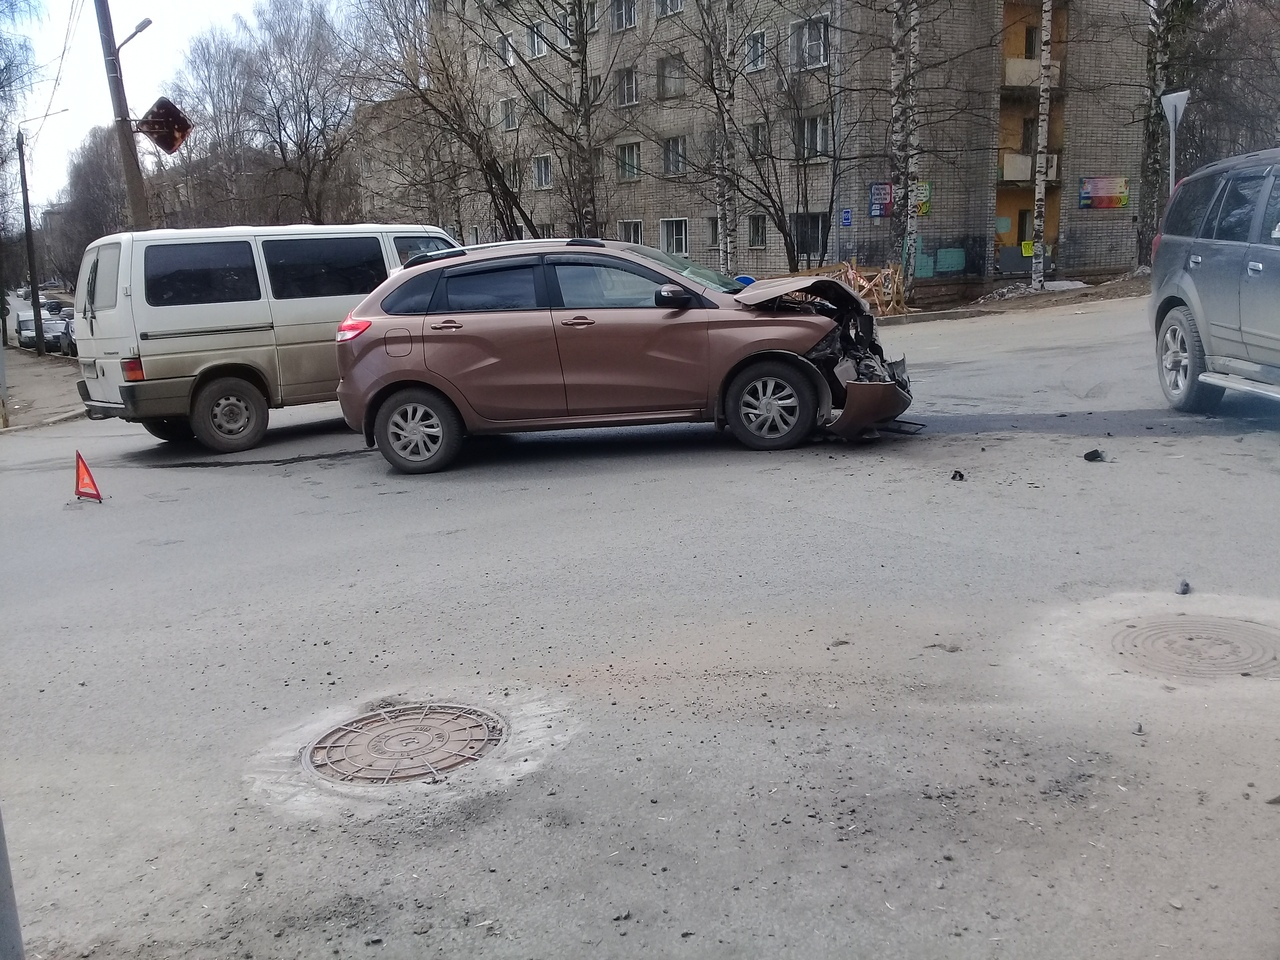 Утром в Кирове произошла массовая авария: есть пострадавшие